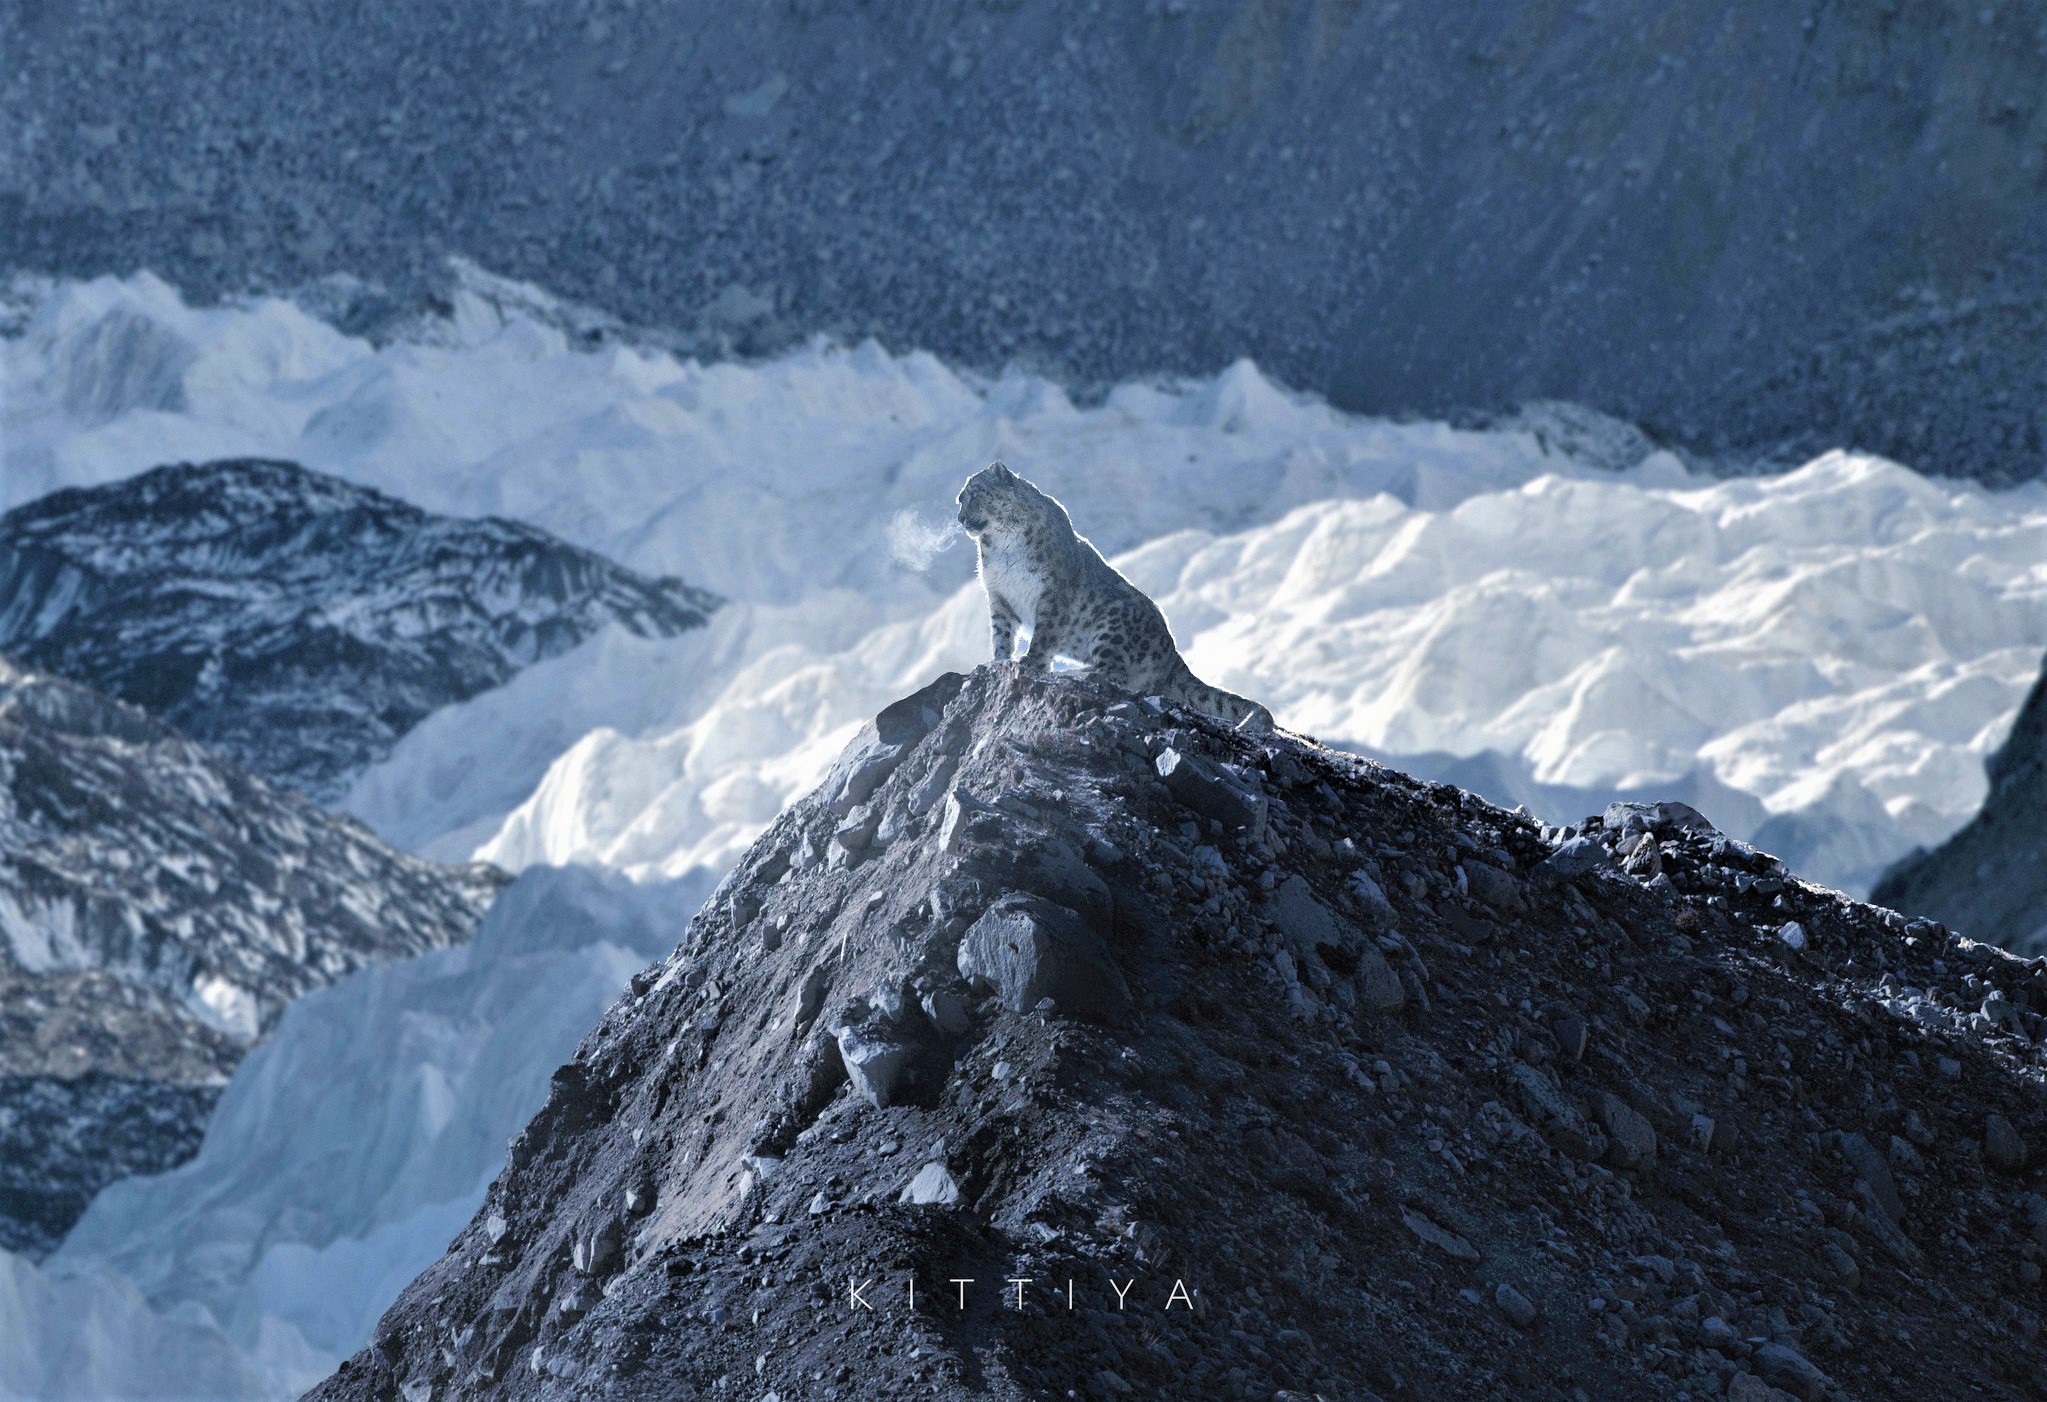 नेपालमा खिचिएको भनिएका हिम चितुवाका तस्वीर फोटोसप गरिएको स्वीकार